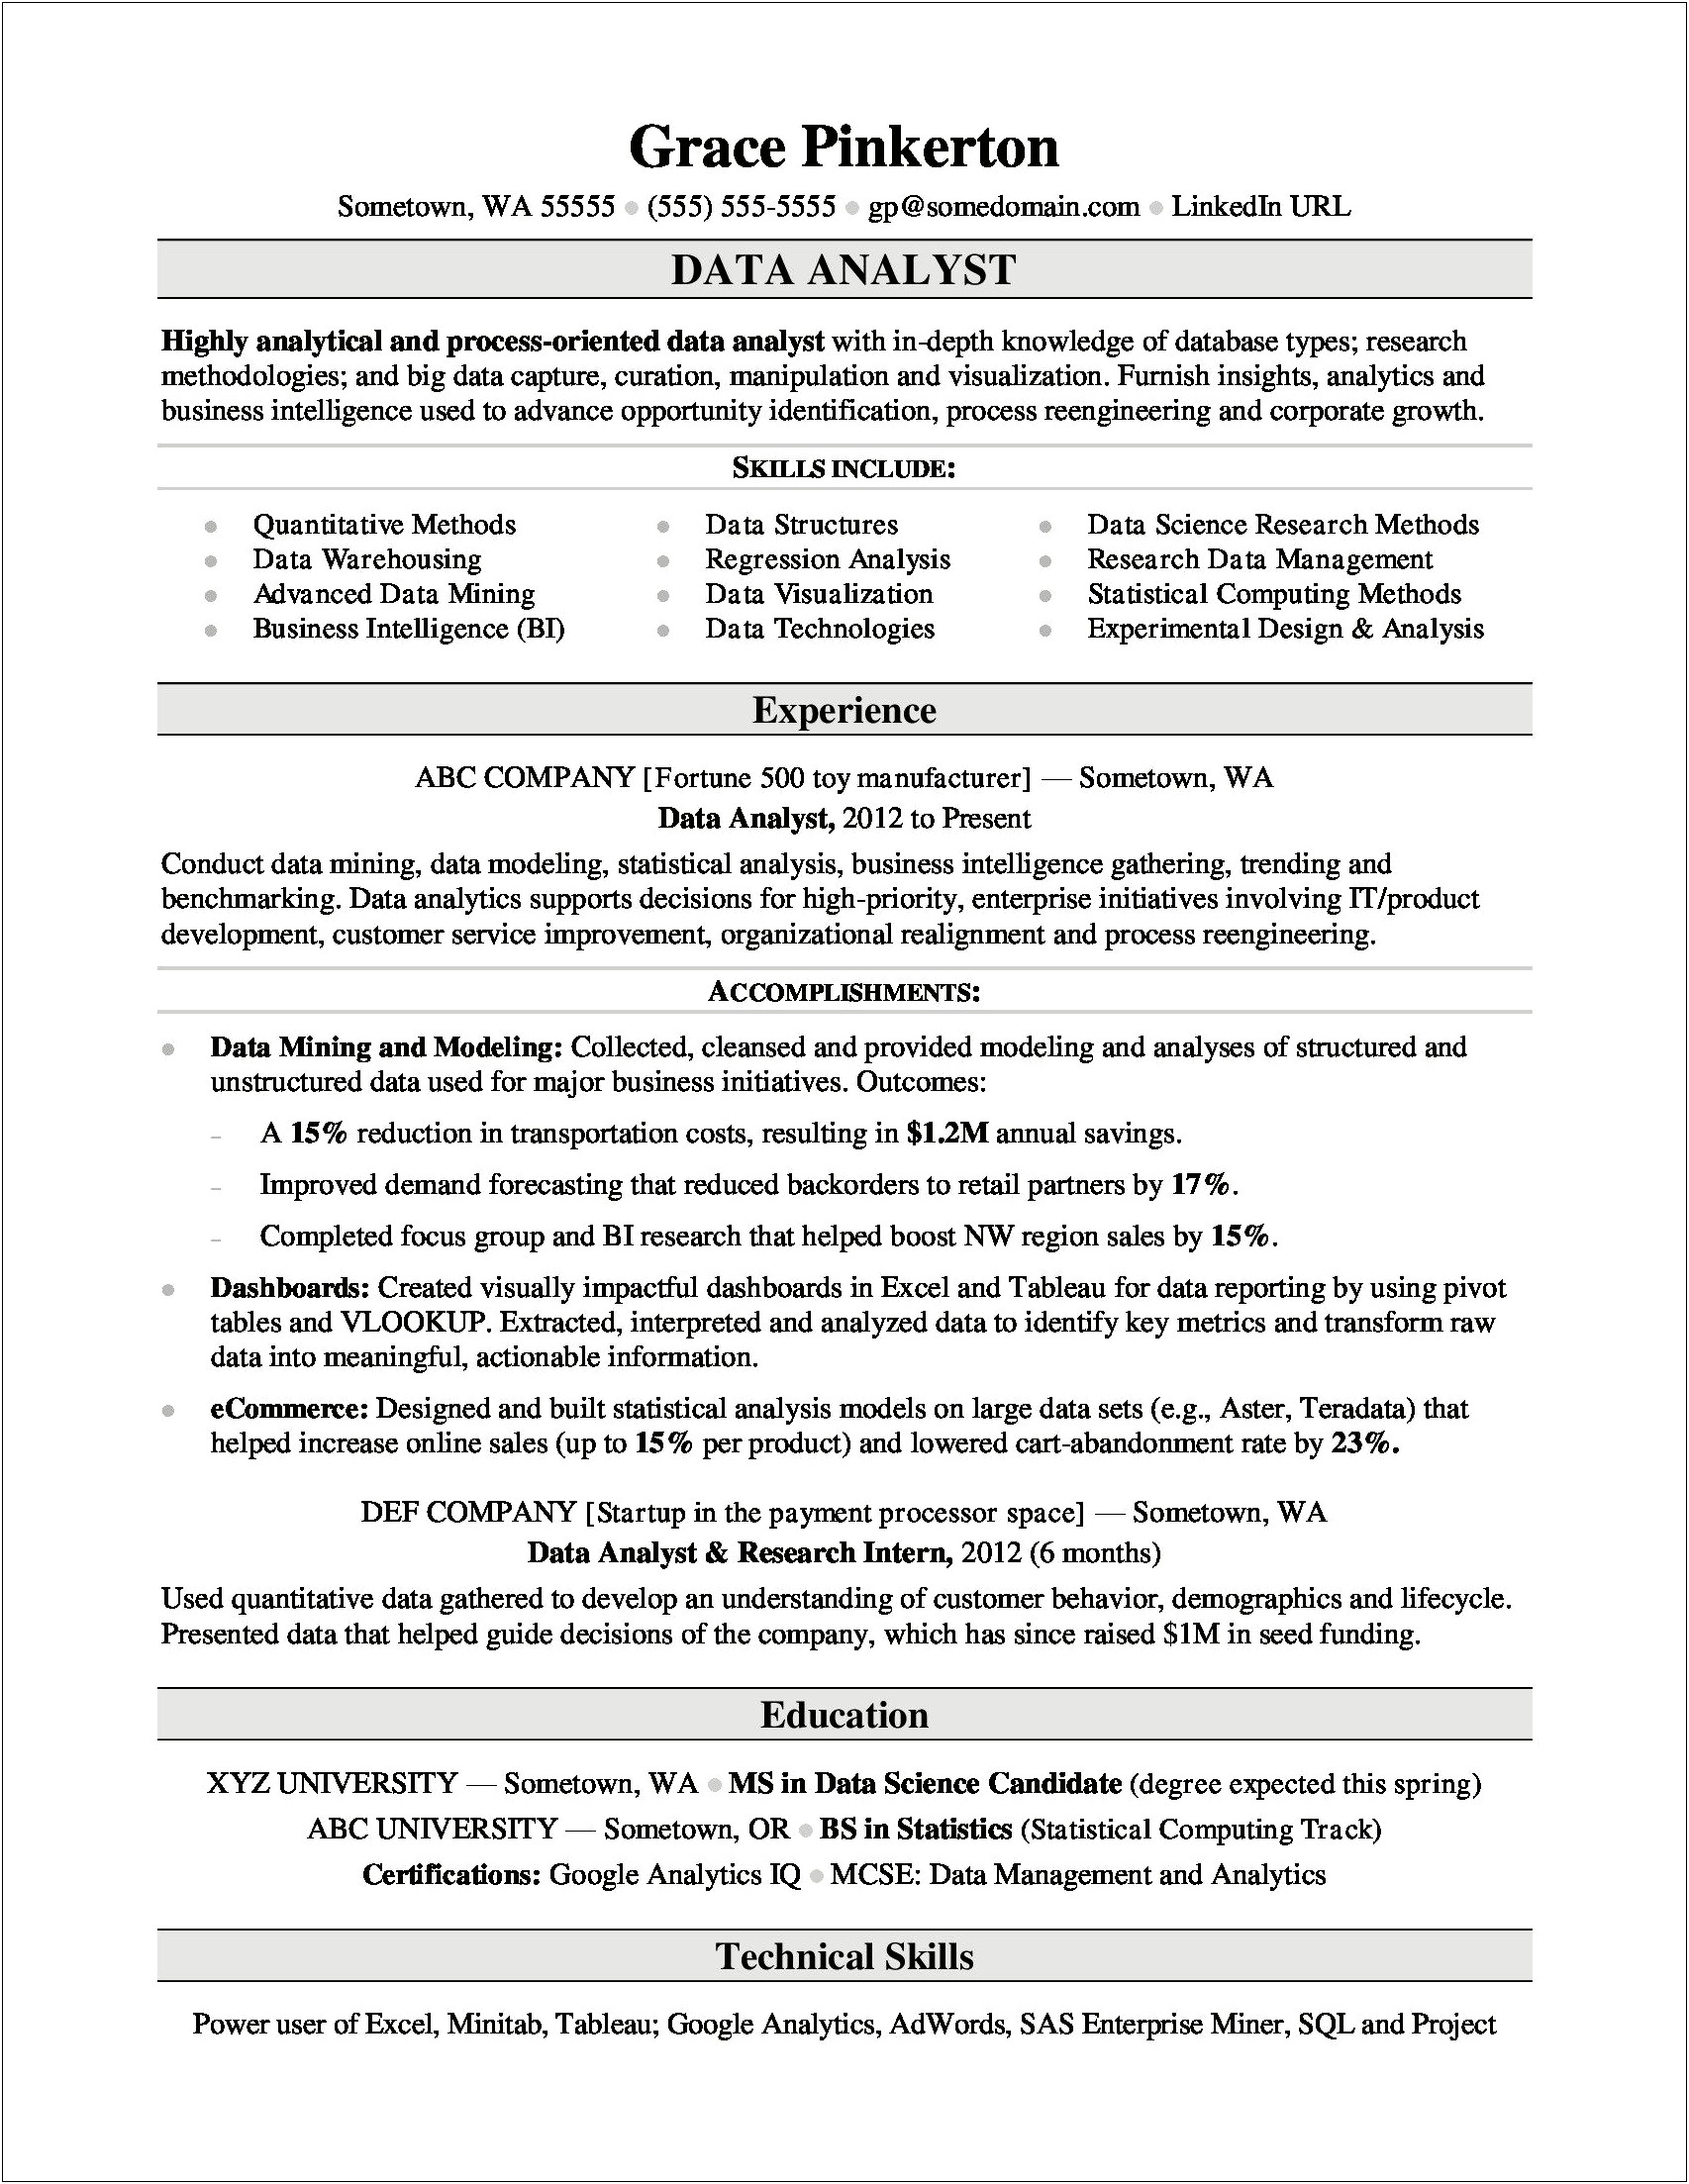 Sample Resume For Master Data Management